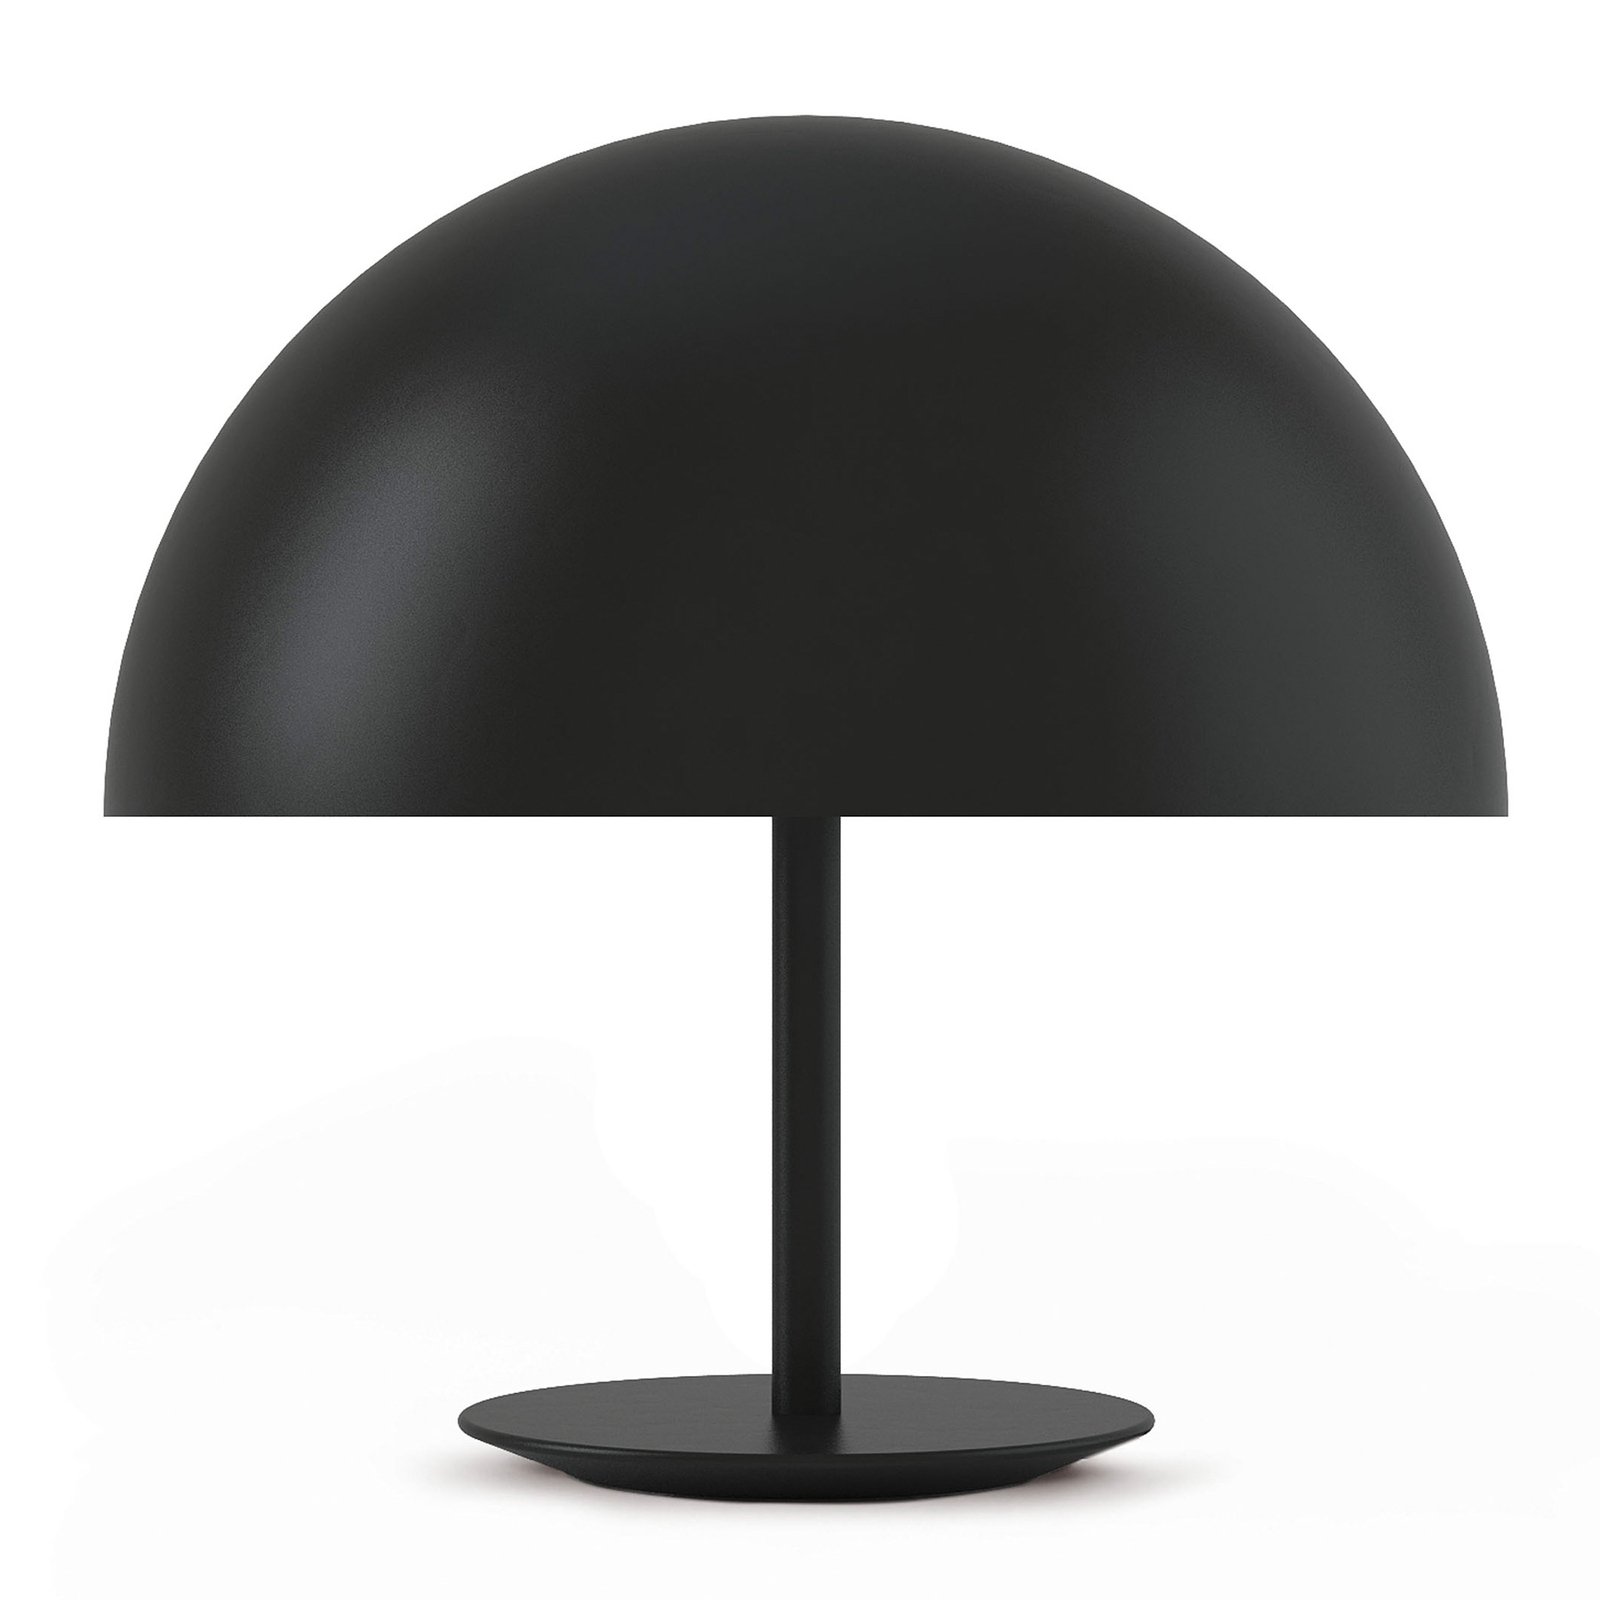 Mater Dome lampe à poser, Ø 40 cm, noire